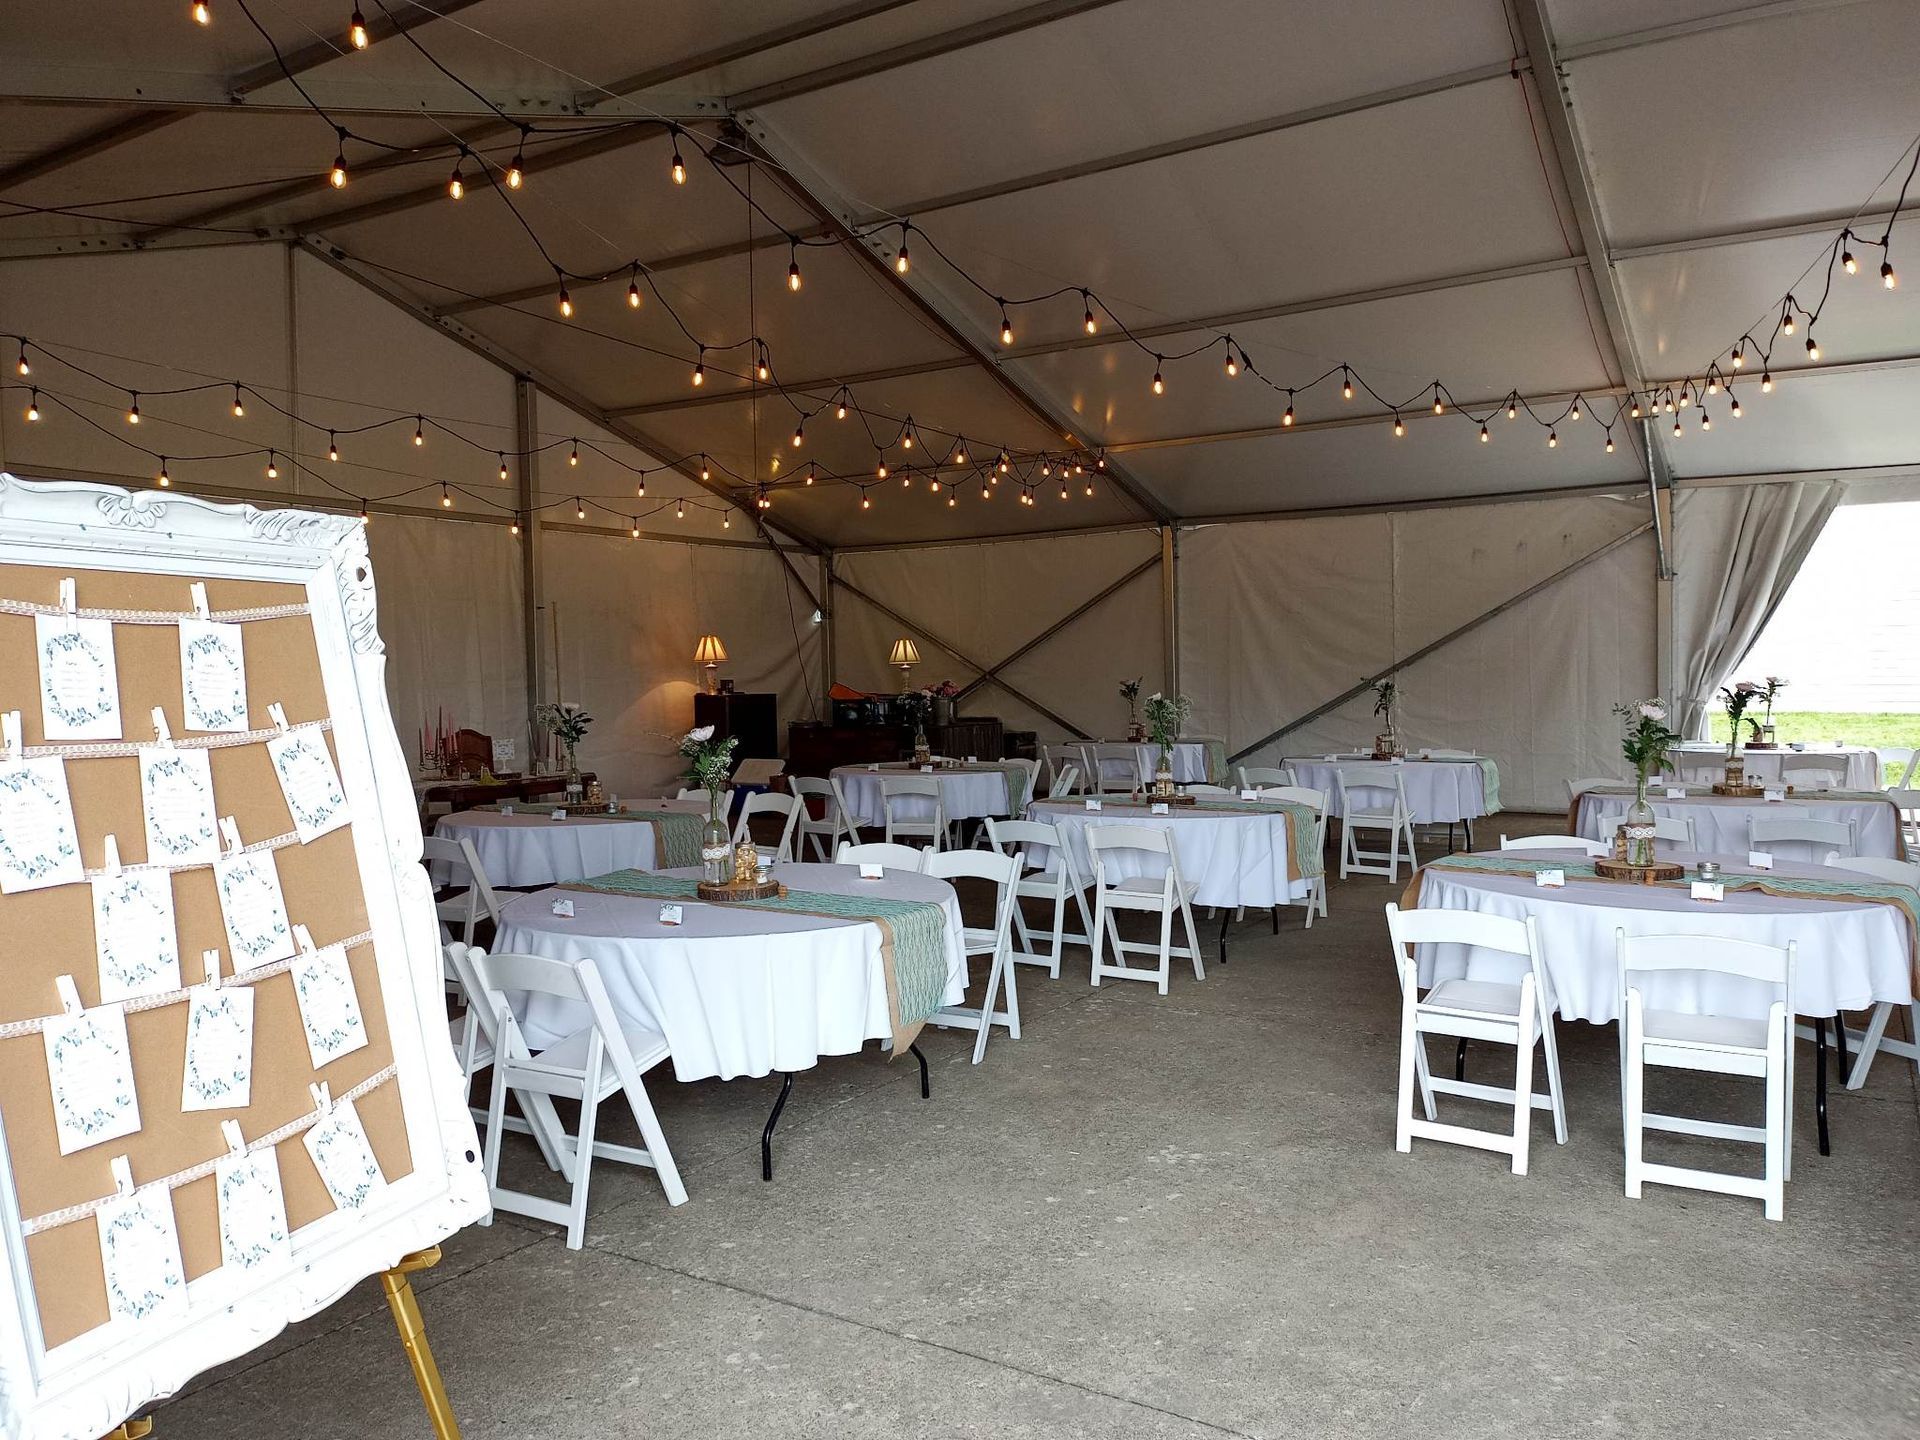 Une grande tente avec tables et chaises installées pour une réception de mariage.